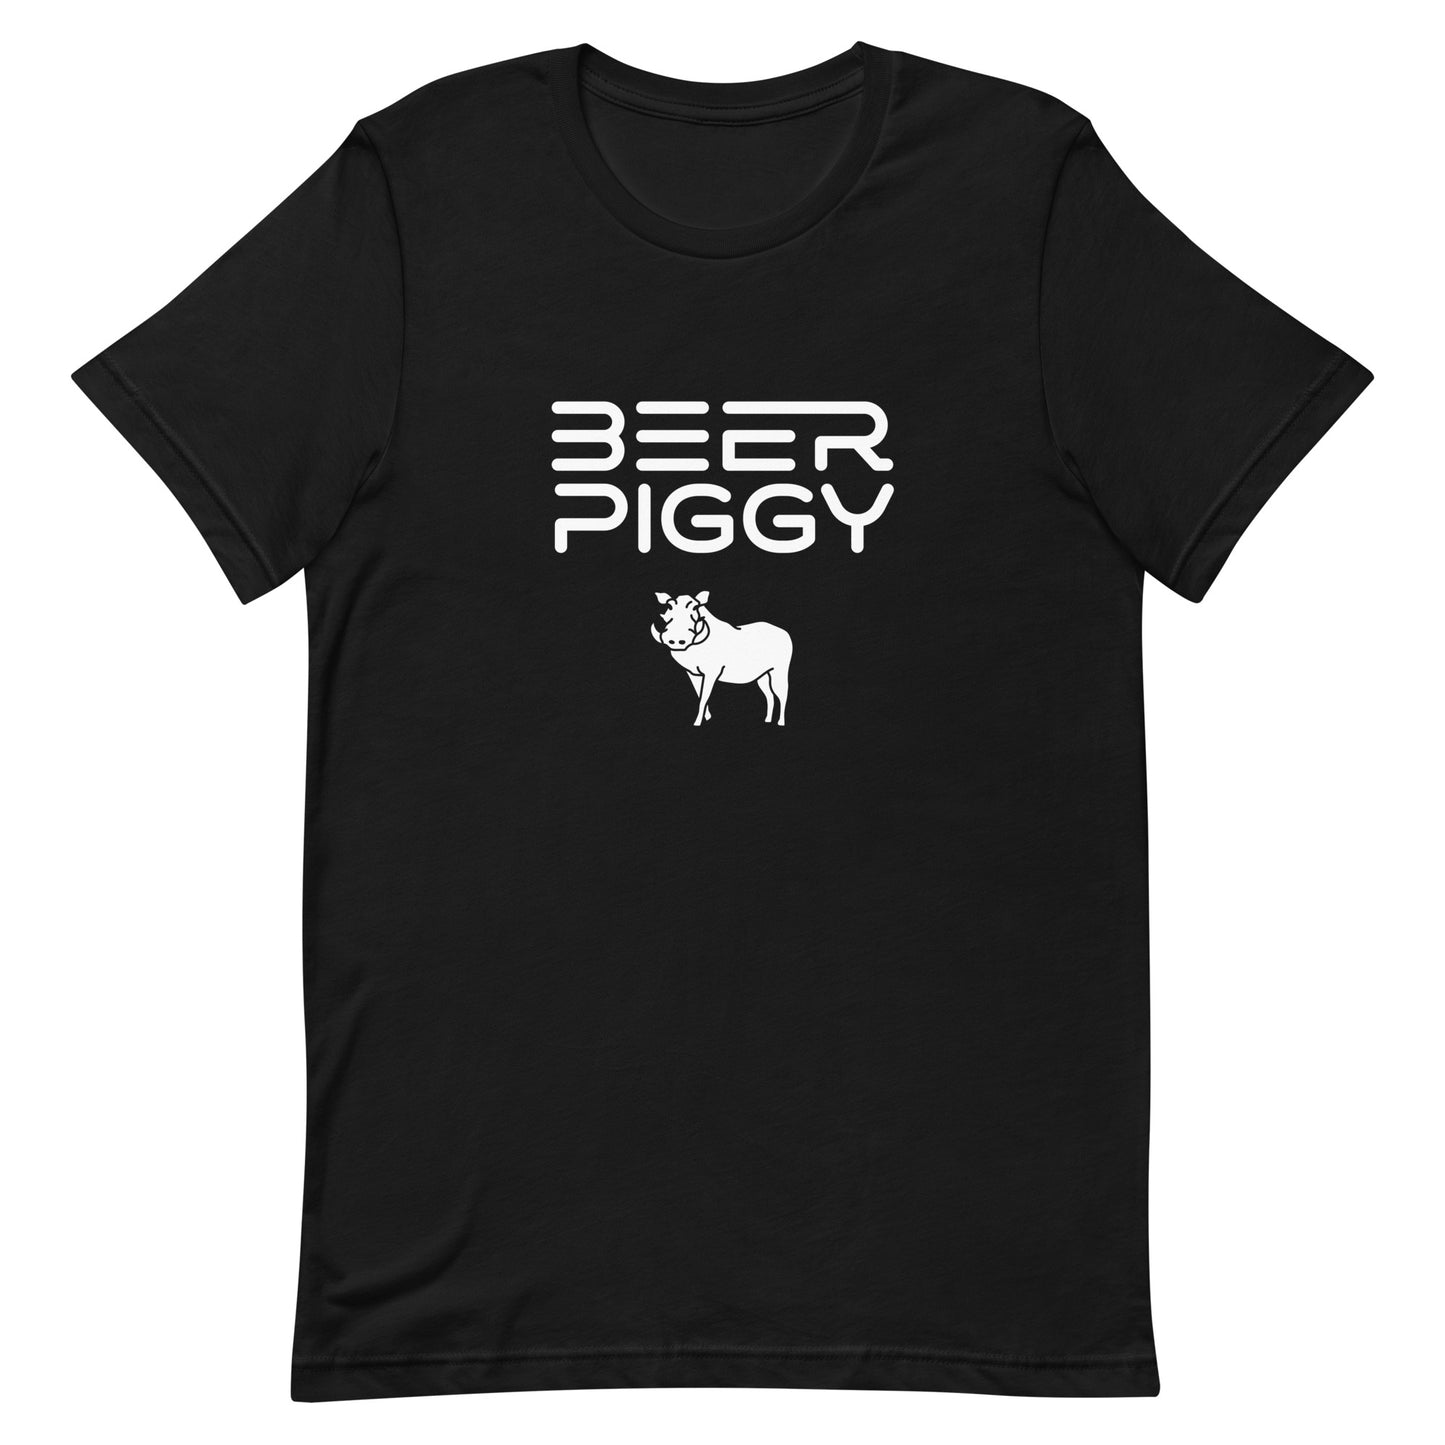 Beer Piggy